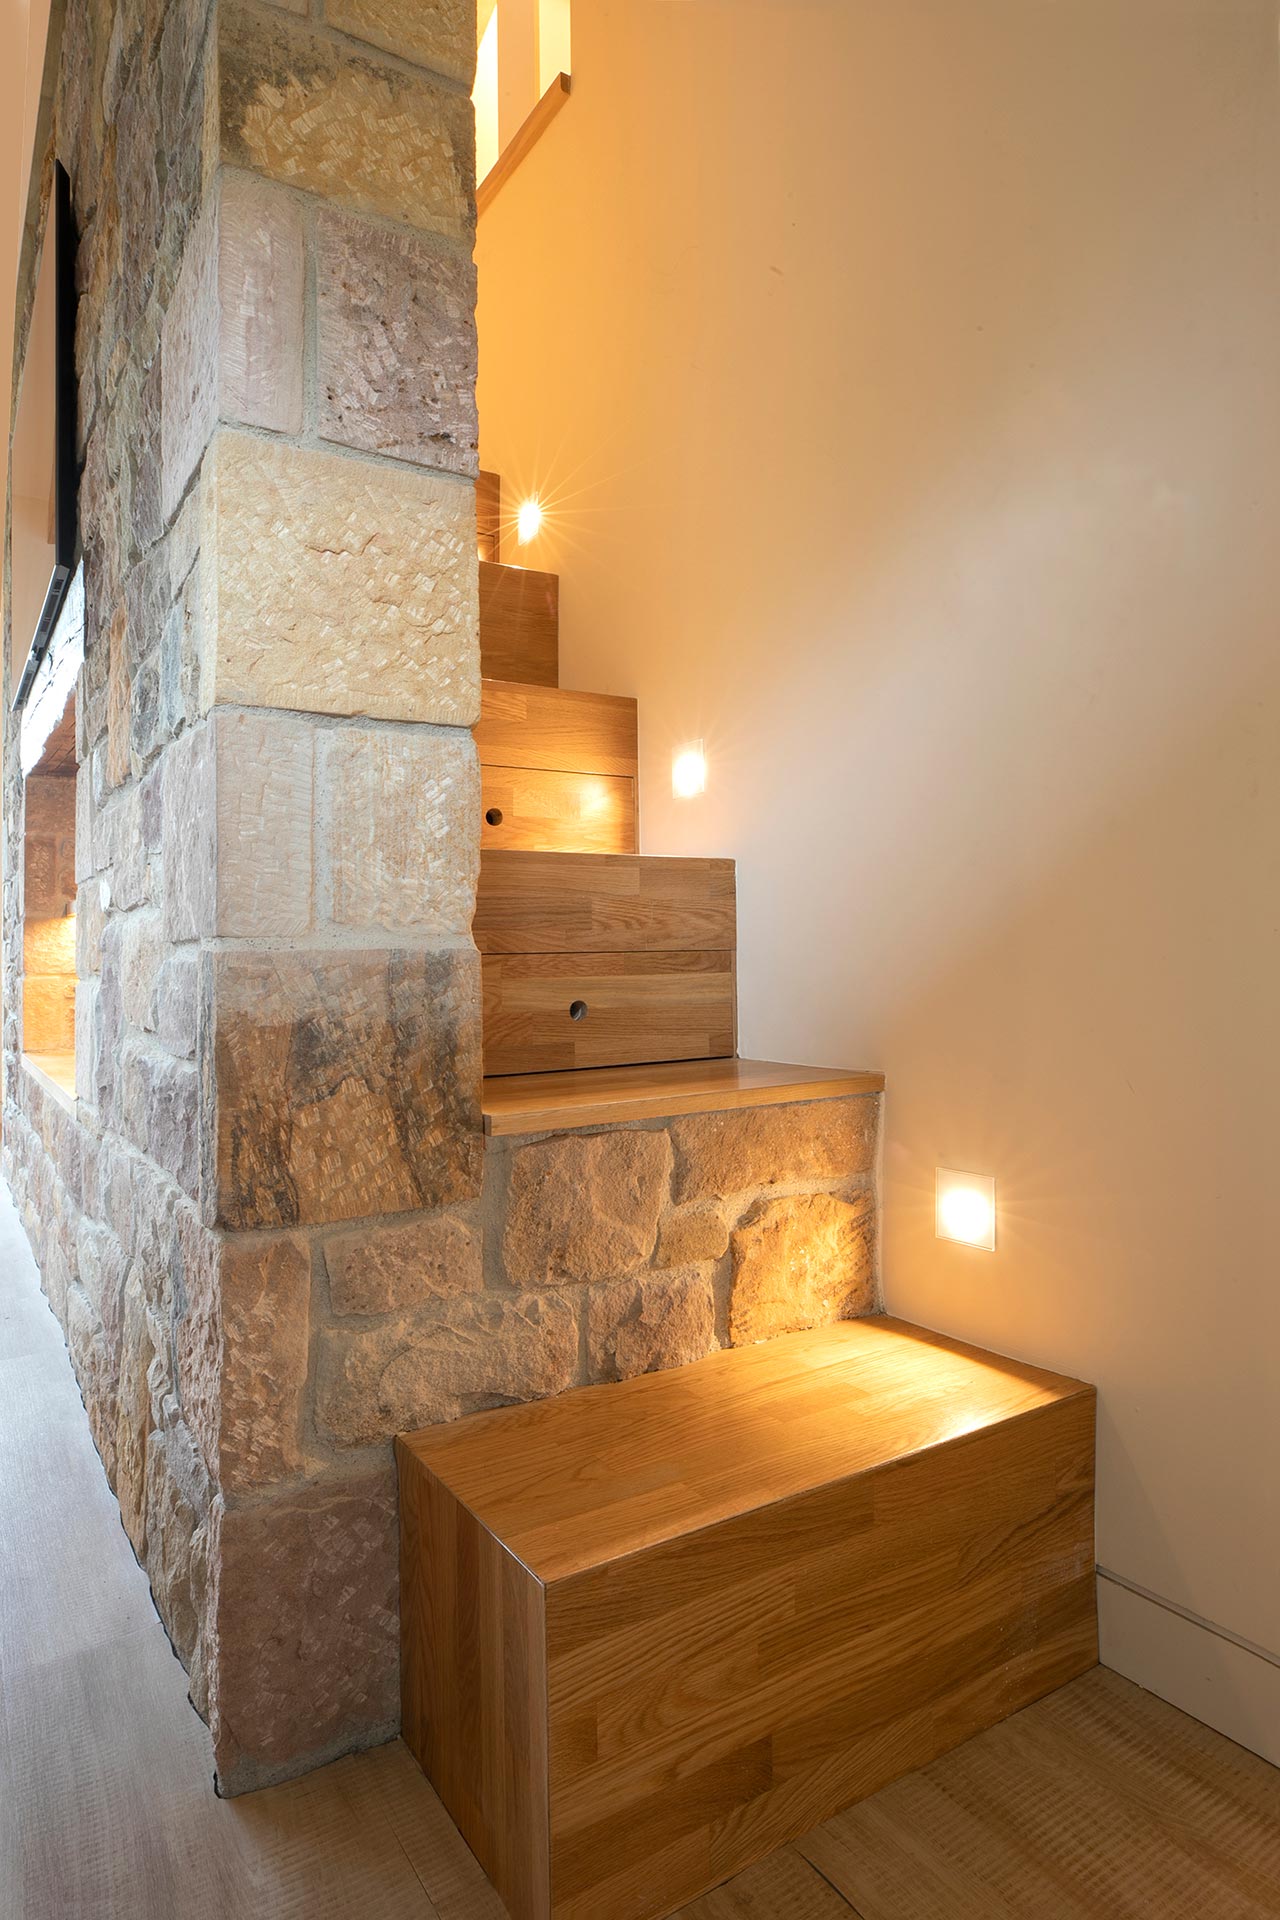 Escalera de madera y piedra de alojamiento moderno en Proaño diseñada por Moah Arquitectos en Cantabria